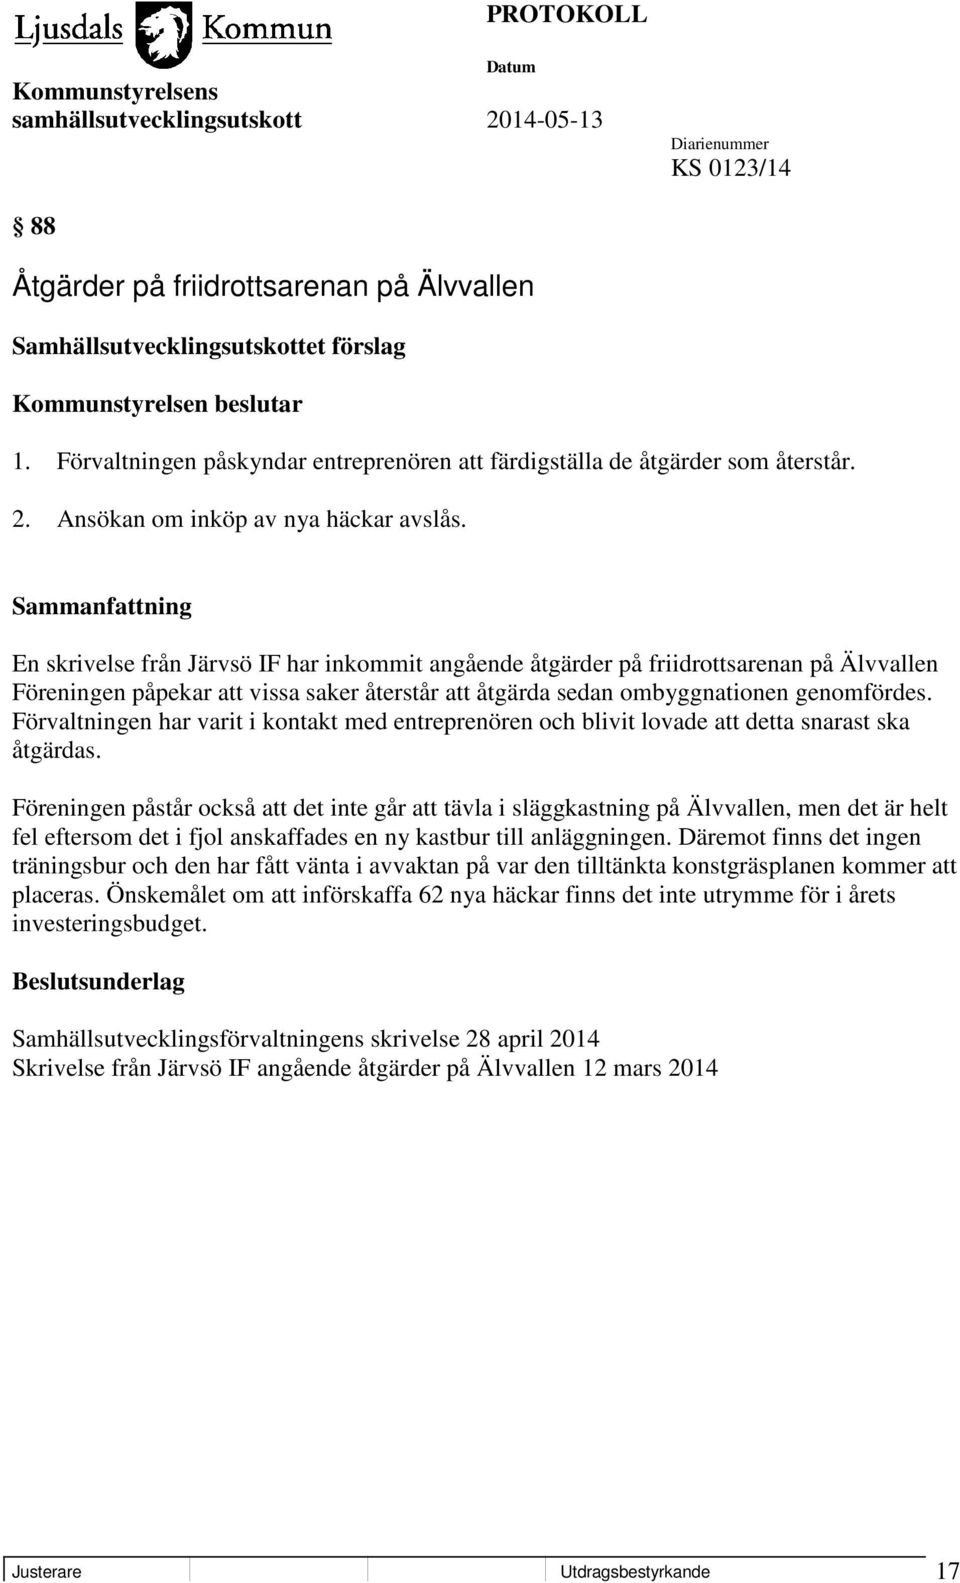 En skrivelse från Järvsö IF har inkommit angående åtgärder på friidrottsarenan på Älvvallen Föreningen påpekar att vissa saker återstår att åtgärda sedan ombyggnationen genomfördes.